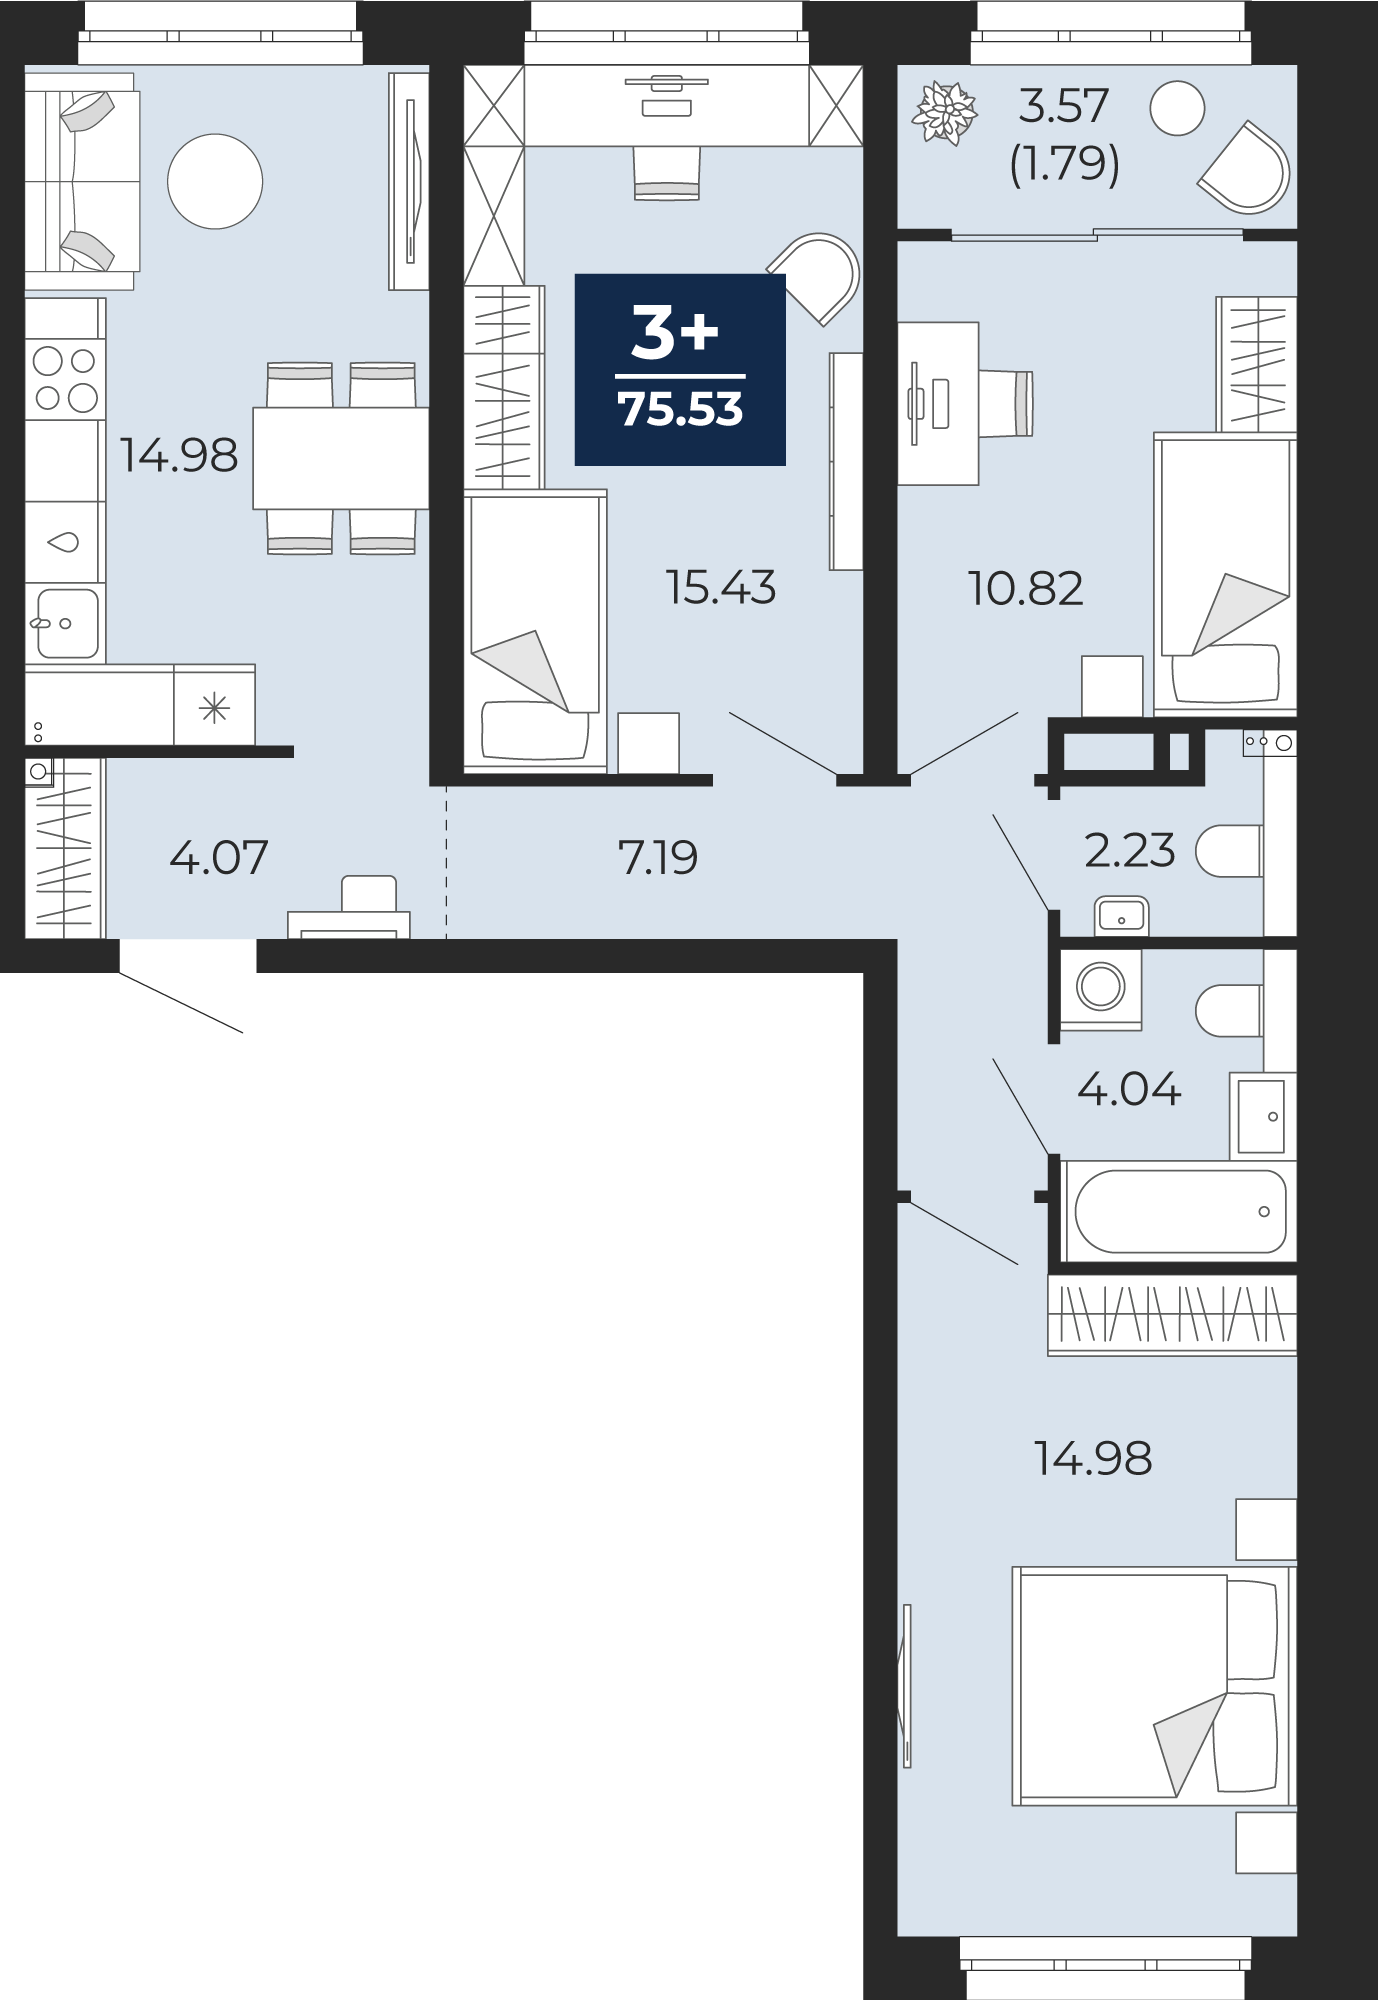 Квартира № 48, 3-комнатная, 75.53 кв. м, 11 этаж